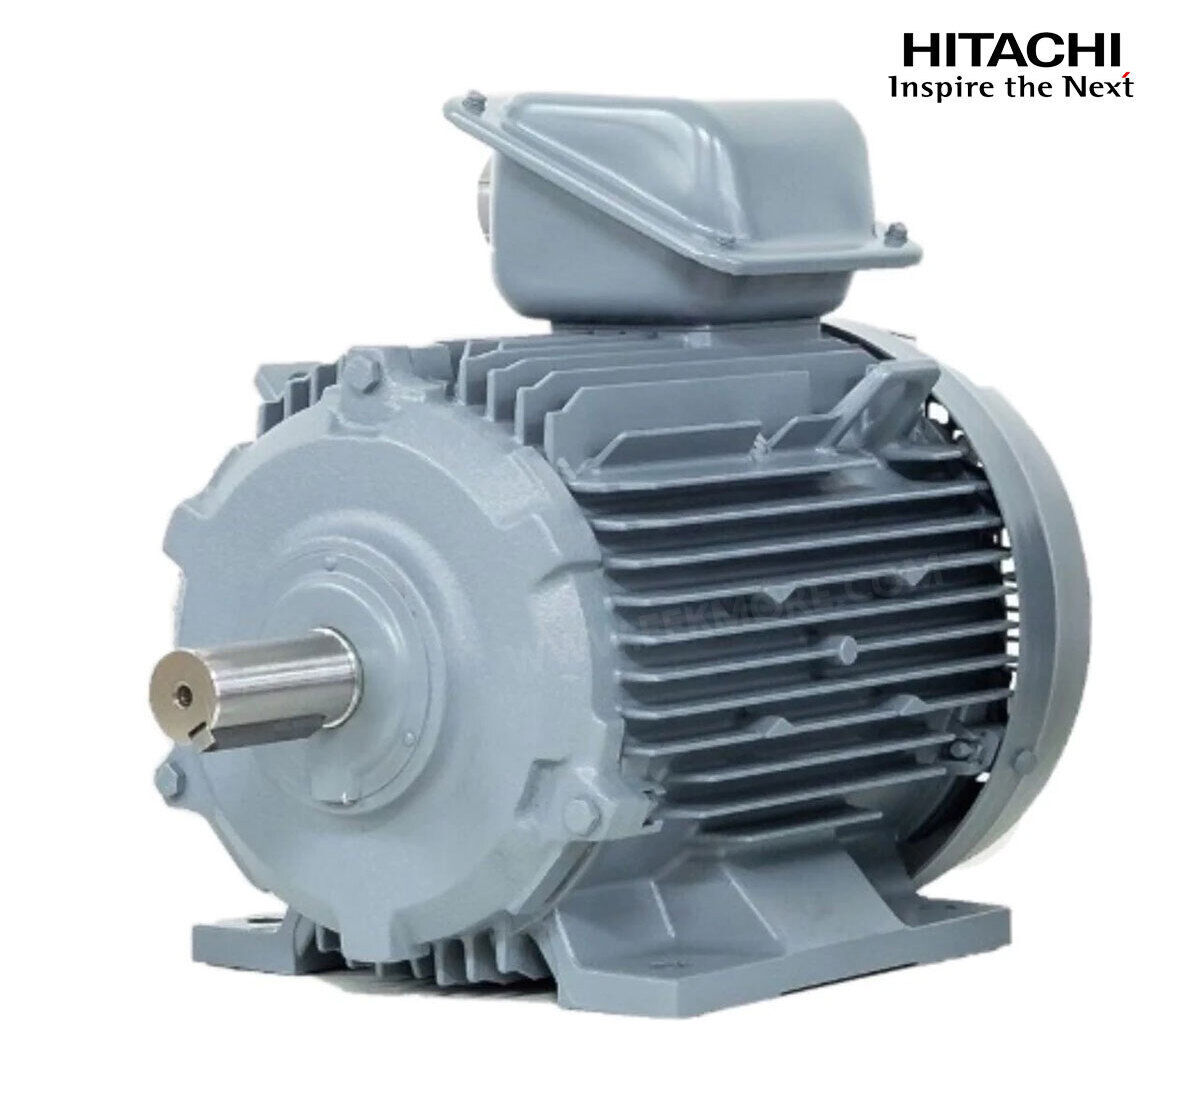 มอเตอร์ฮิตาชิของแท้ 100% HITACHI รุ่น TFO-KK กำลัง 30 แรงม้า (22 KW.) กำลังไฟฟ้าที่ใช้ 380V ความเร็วรอบตัวเปล่า 1450 RPM แกนเพลามอเตอร์ 48 MM.รับประกัน 3 ปี มีของพร้อมจัดส่งทุกวัน